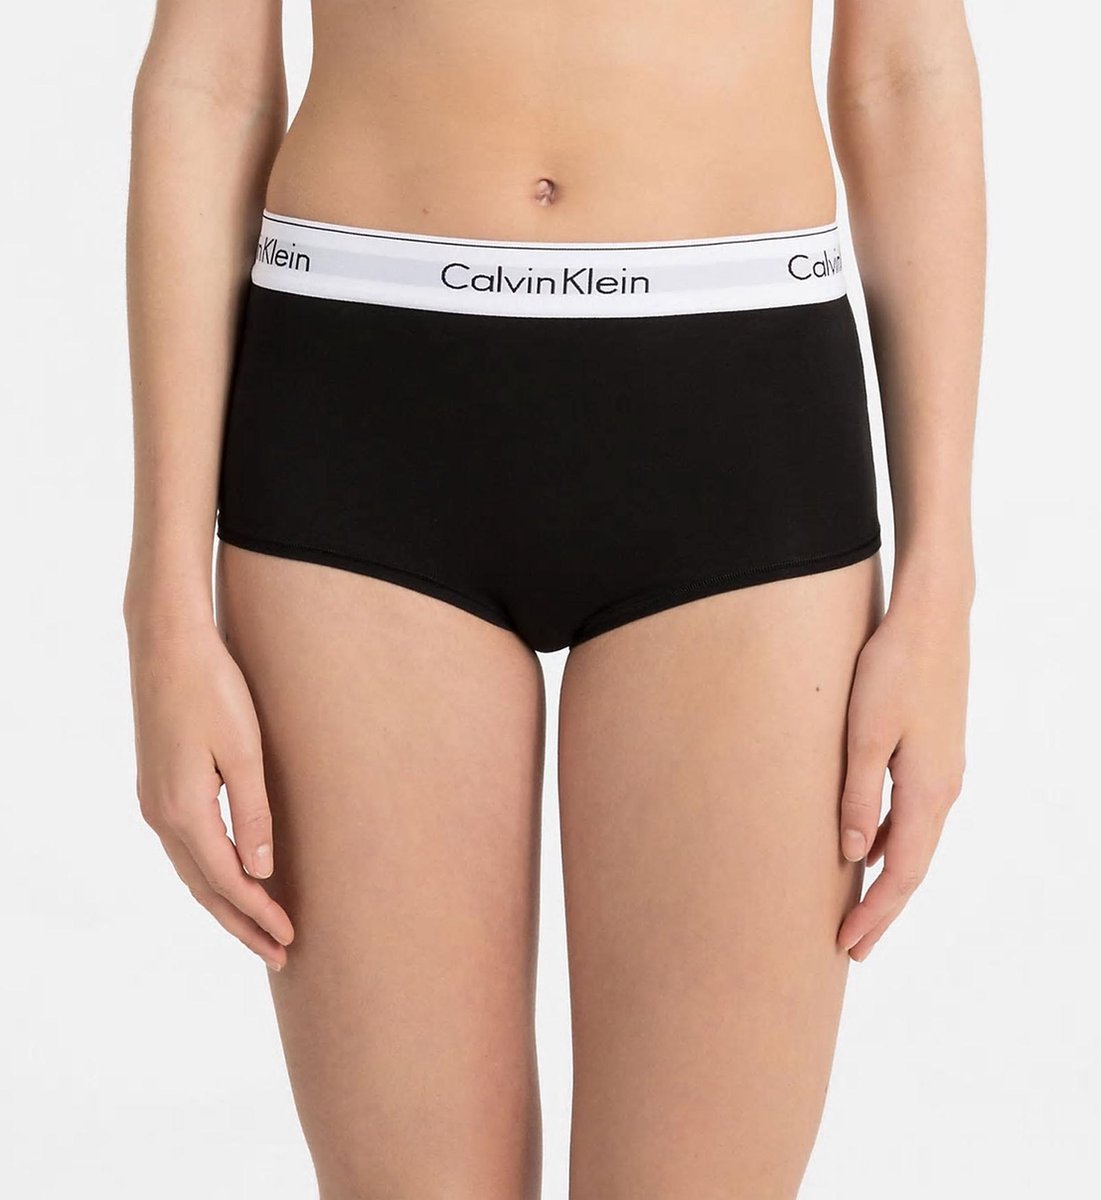 Vervolg Ik wil niet uitlaat Calvin Klein Onderbroek - Maat M - Vrouwen - zwart/wit | bol.com